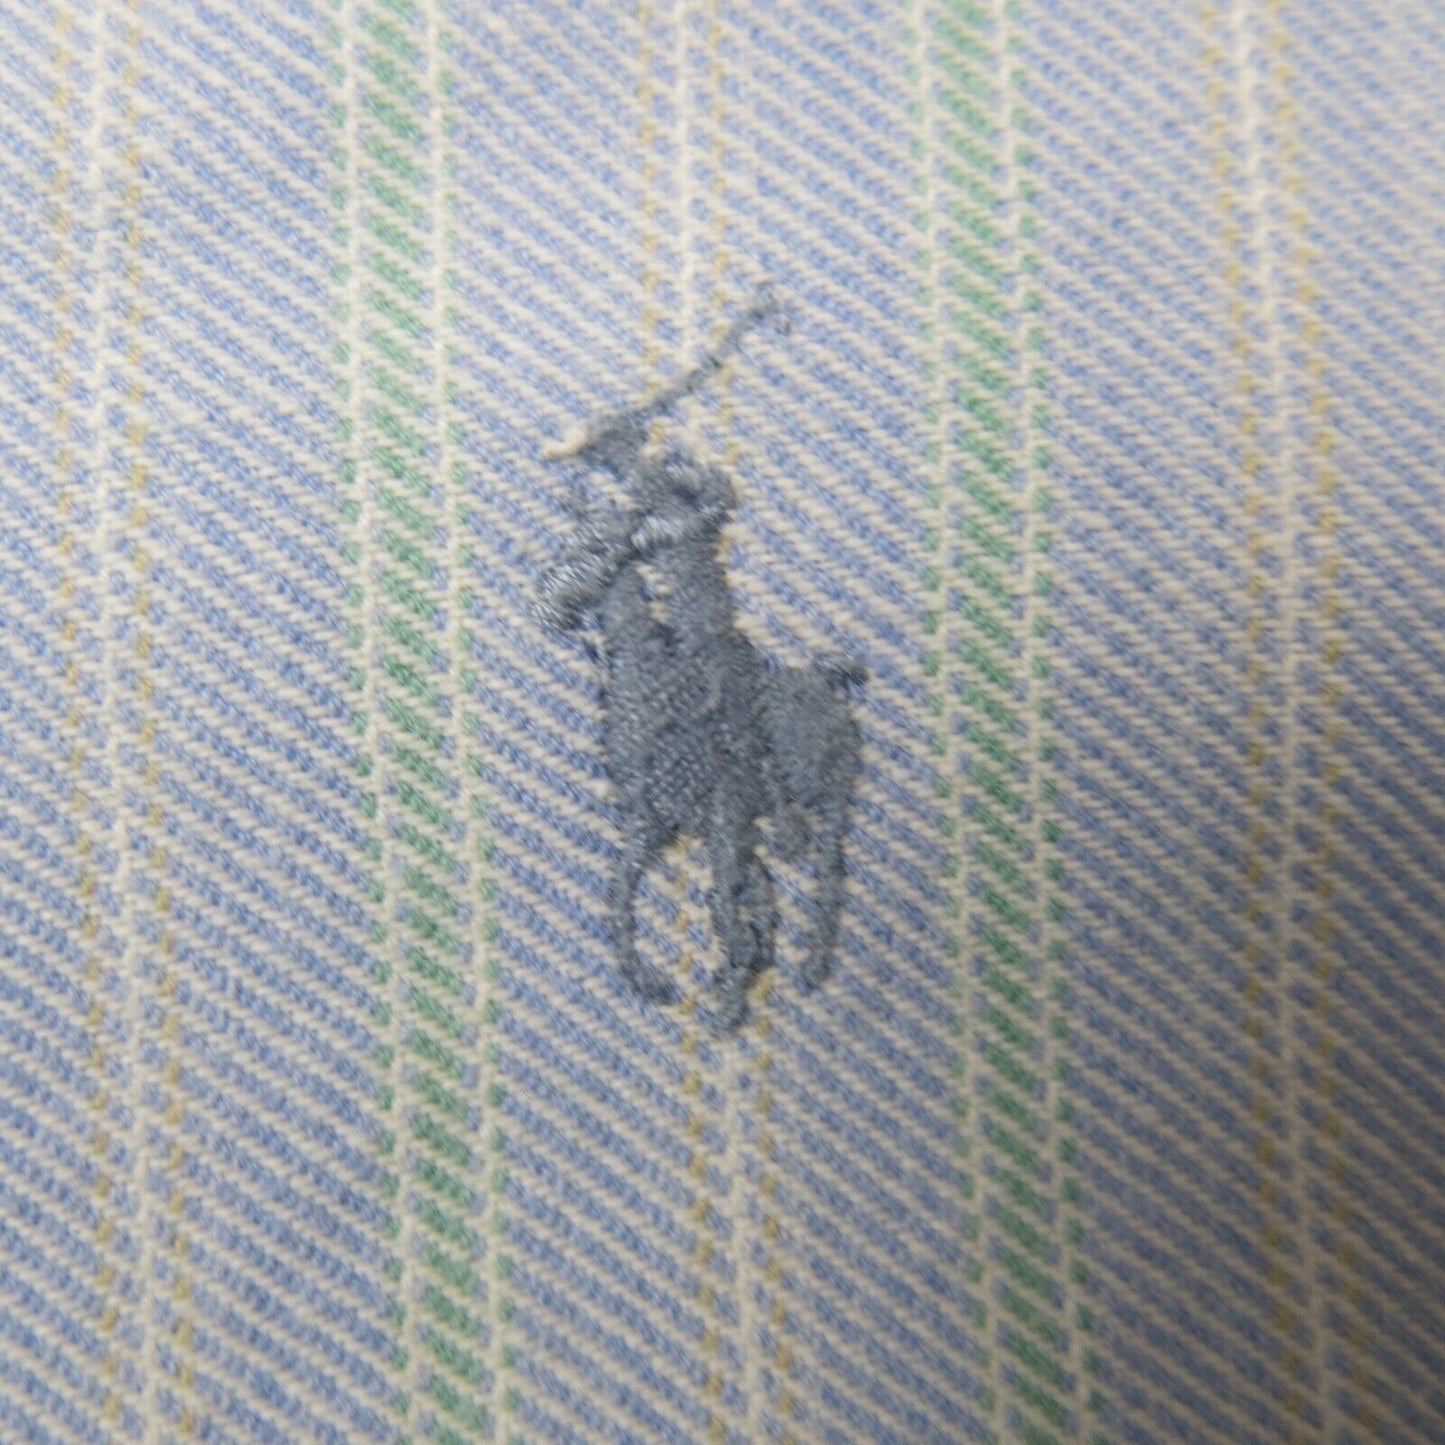 Ralph Lauren Mens Button Down Shirt Striped Cotton Long Sleeves Blue Green 17-35